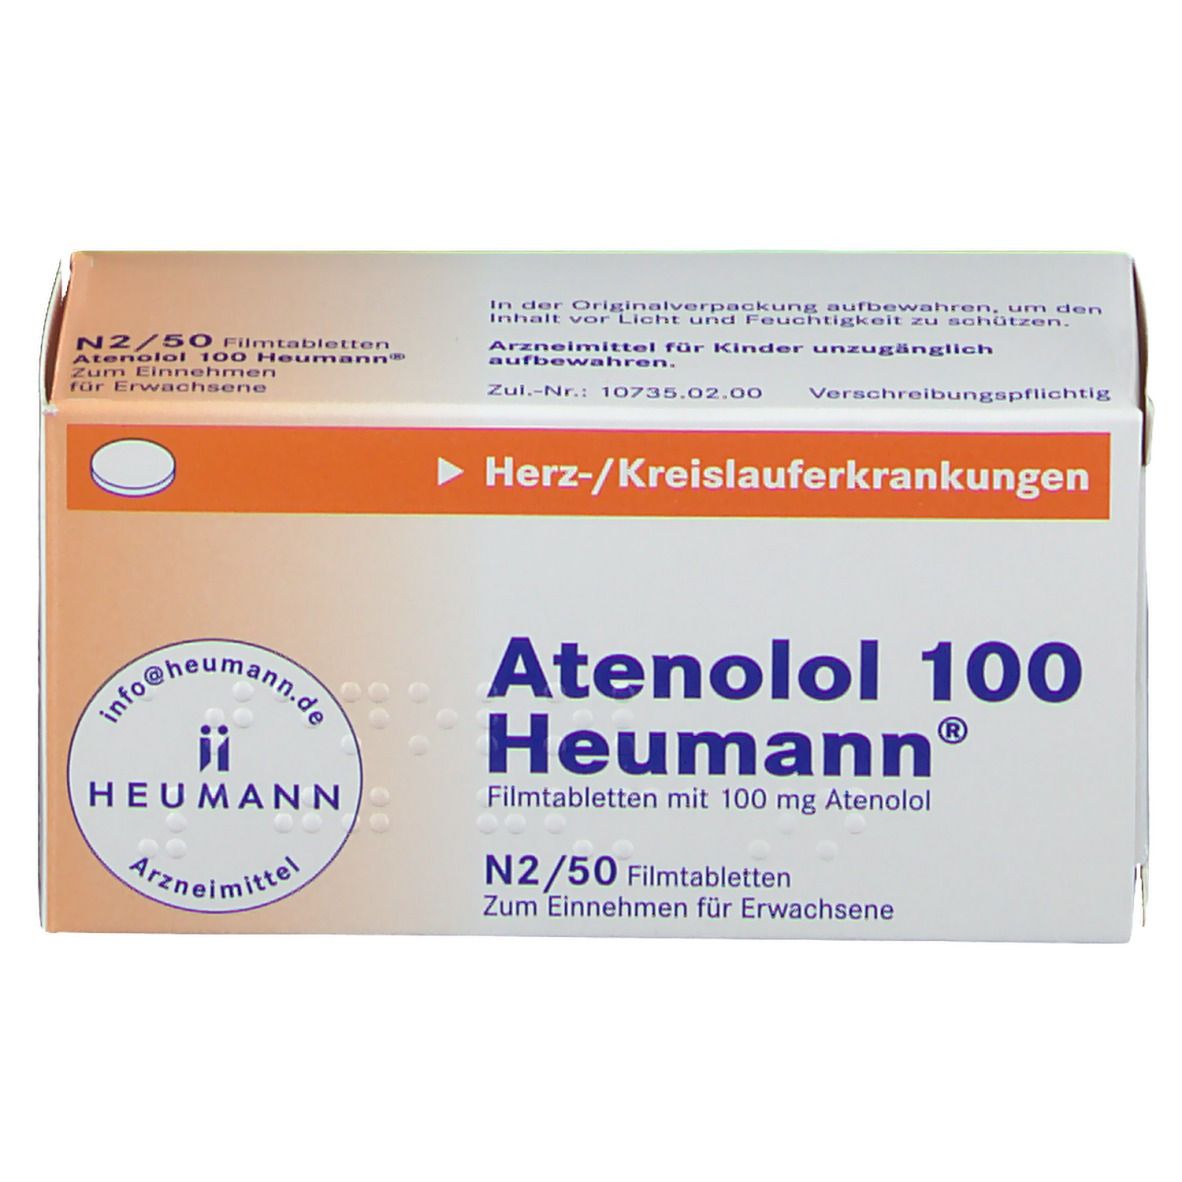 Atenolol 100 Heumann®